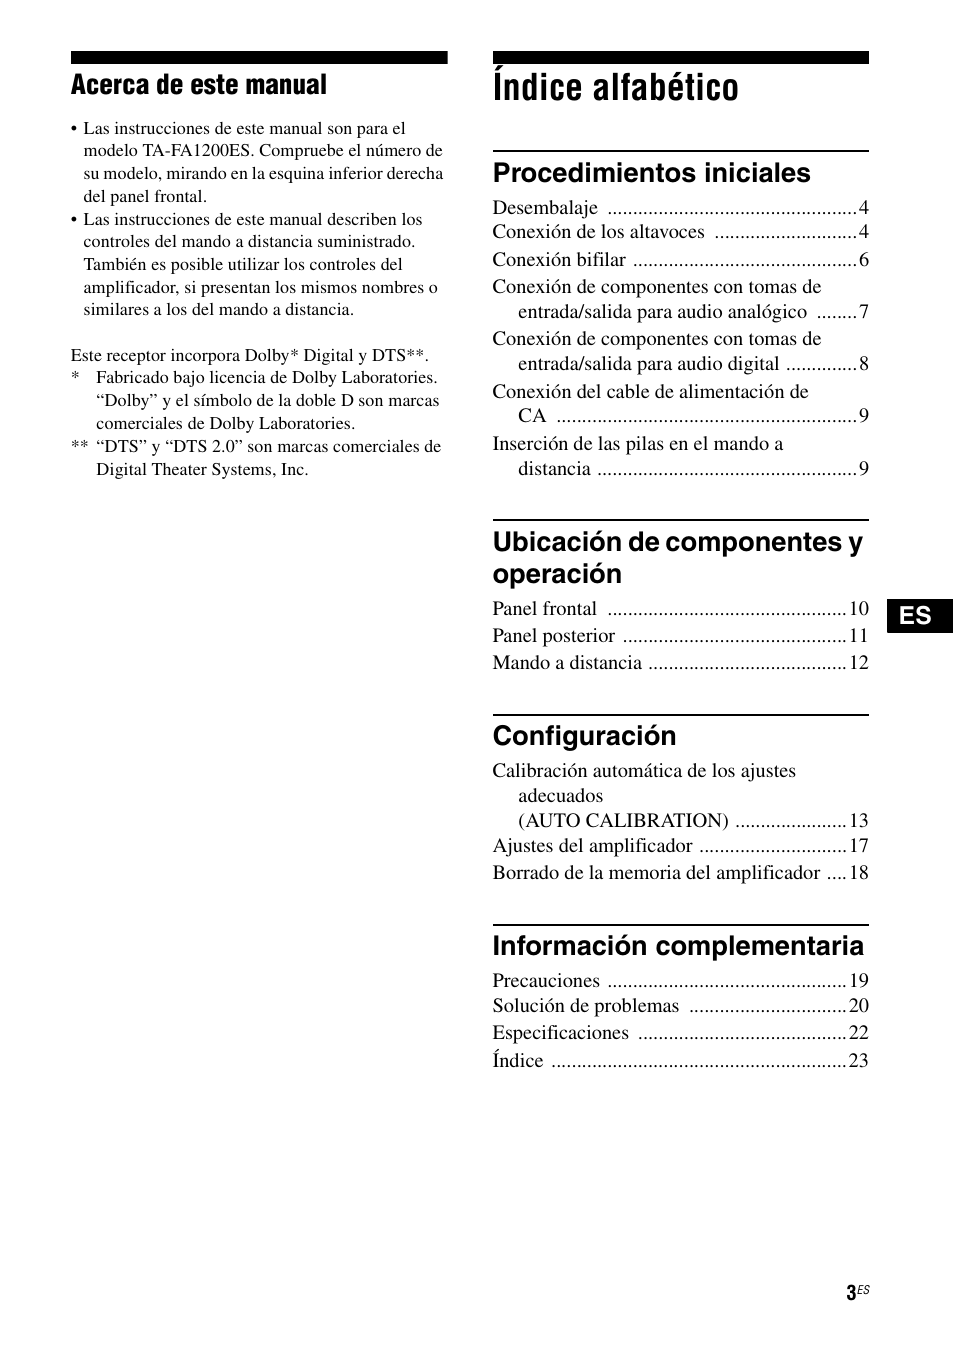 Índice alfabético, Acerca de este manual, Procedimientos iniciales | Ubicación de componentes y operación, Configuración, Información complementaria | Sony TA-FA1200ES User Manual | Page 25 / 91